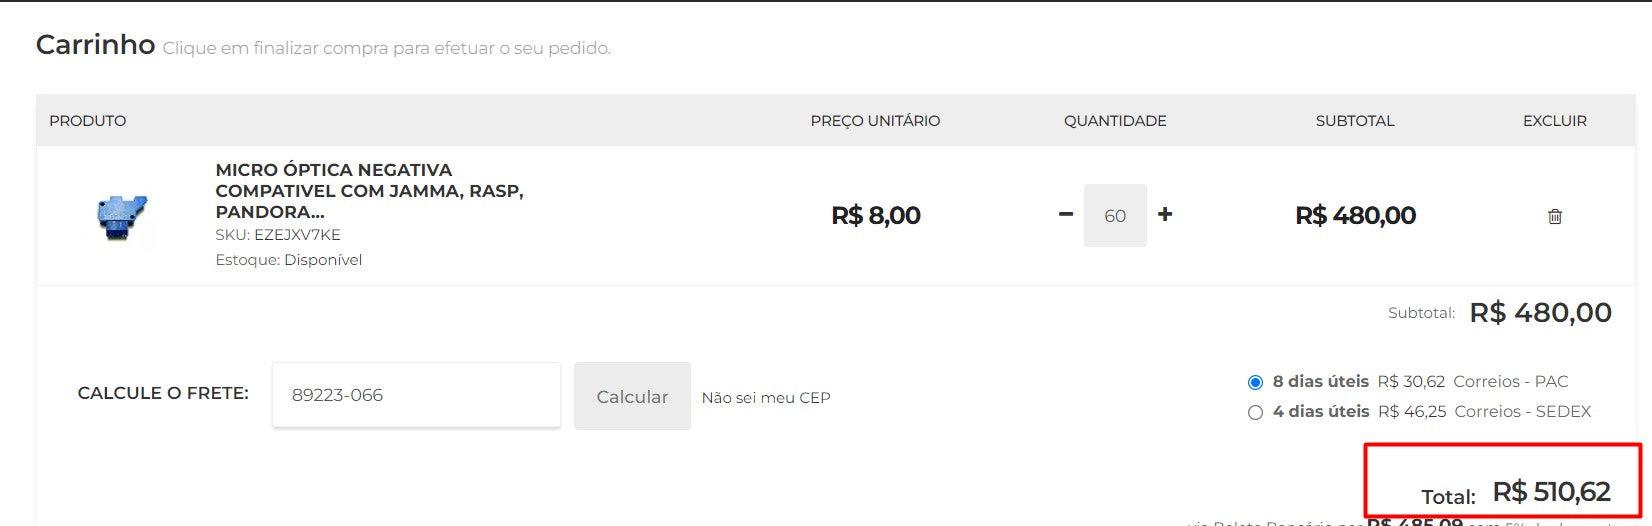 パーソナルショッパー | ブラジルから購入 - ヨガウェア - 2 アイテム (DDP)